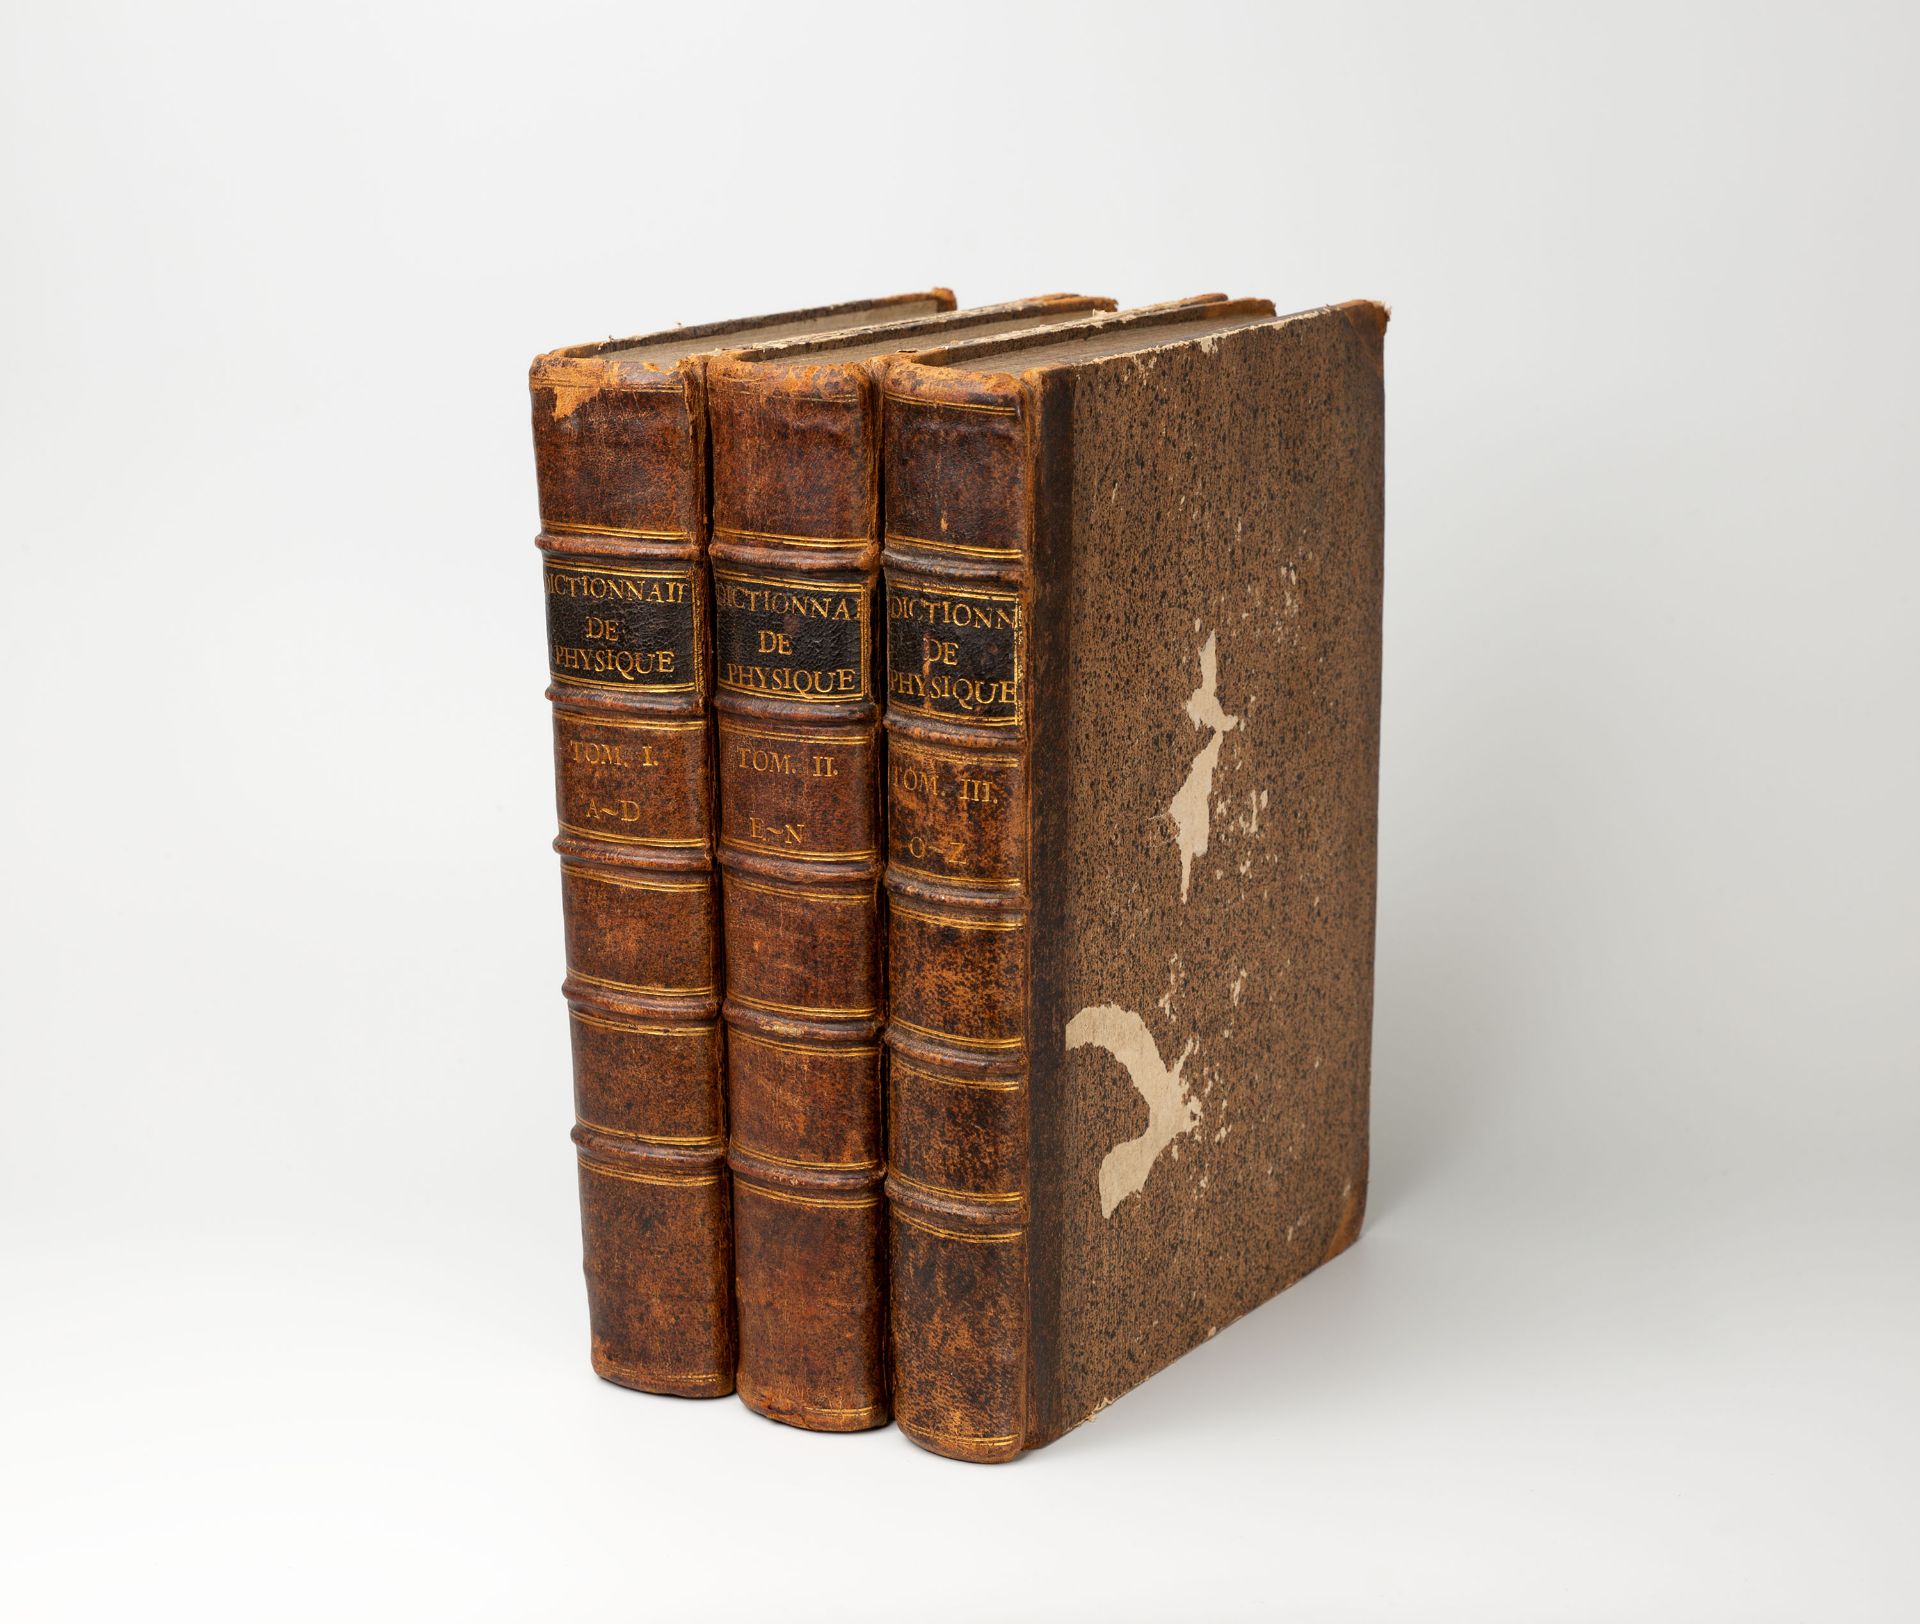 A.-H. Paulian, Dictionnaire de Physique. 3 Bde. Avignon 1761. - Image 3 of 3